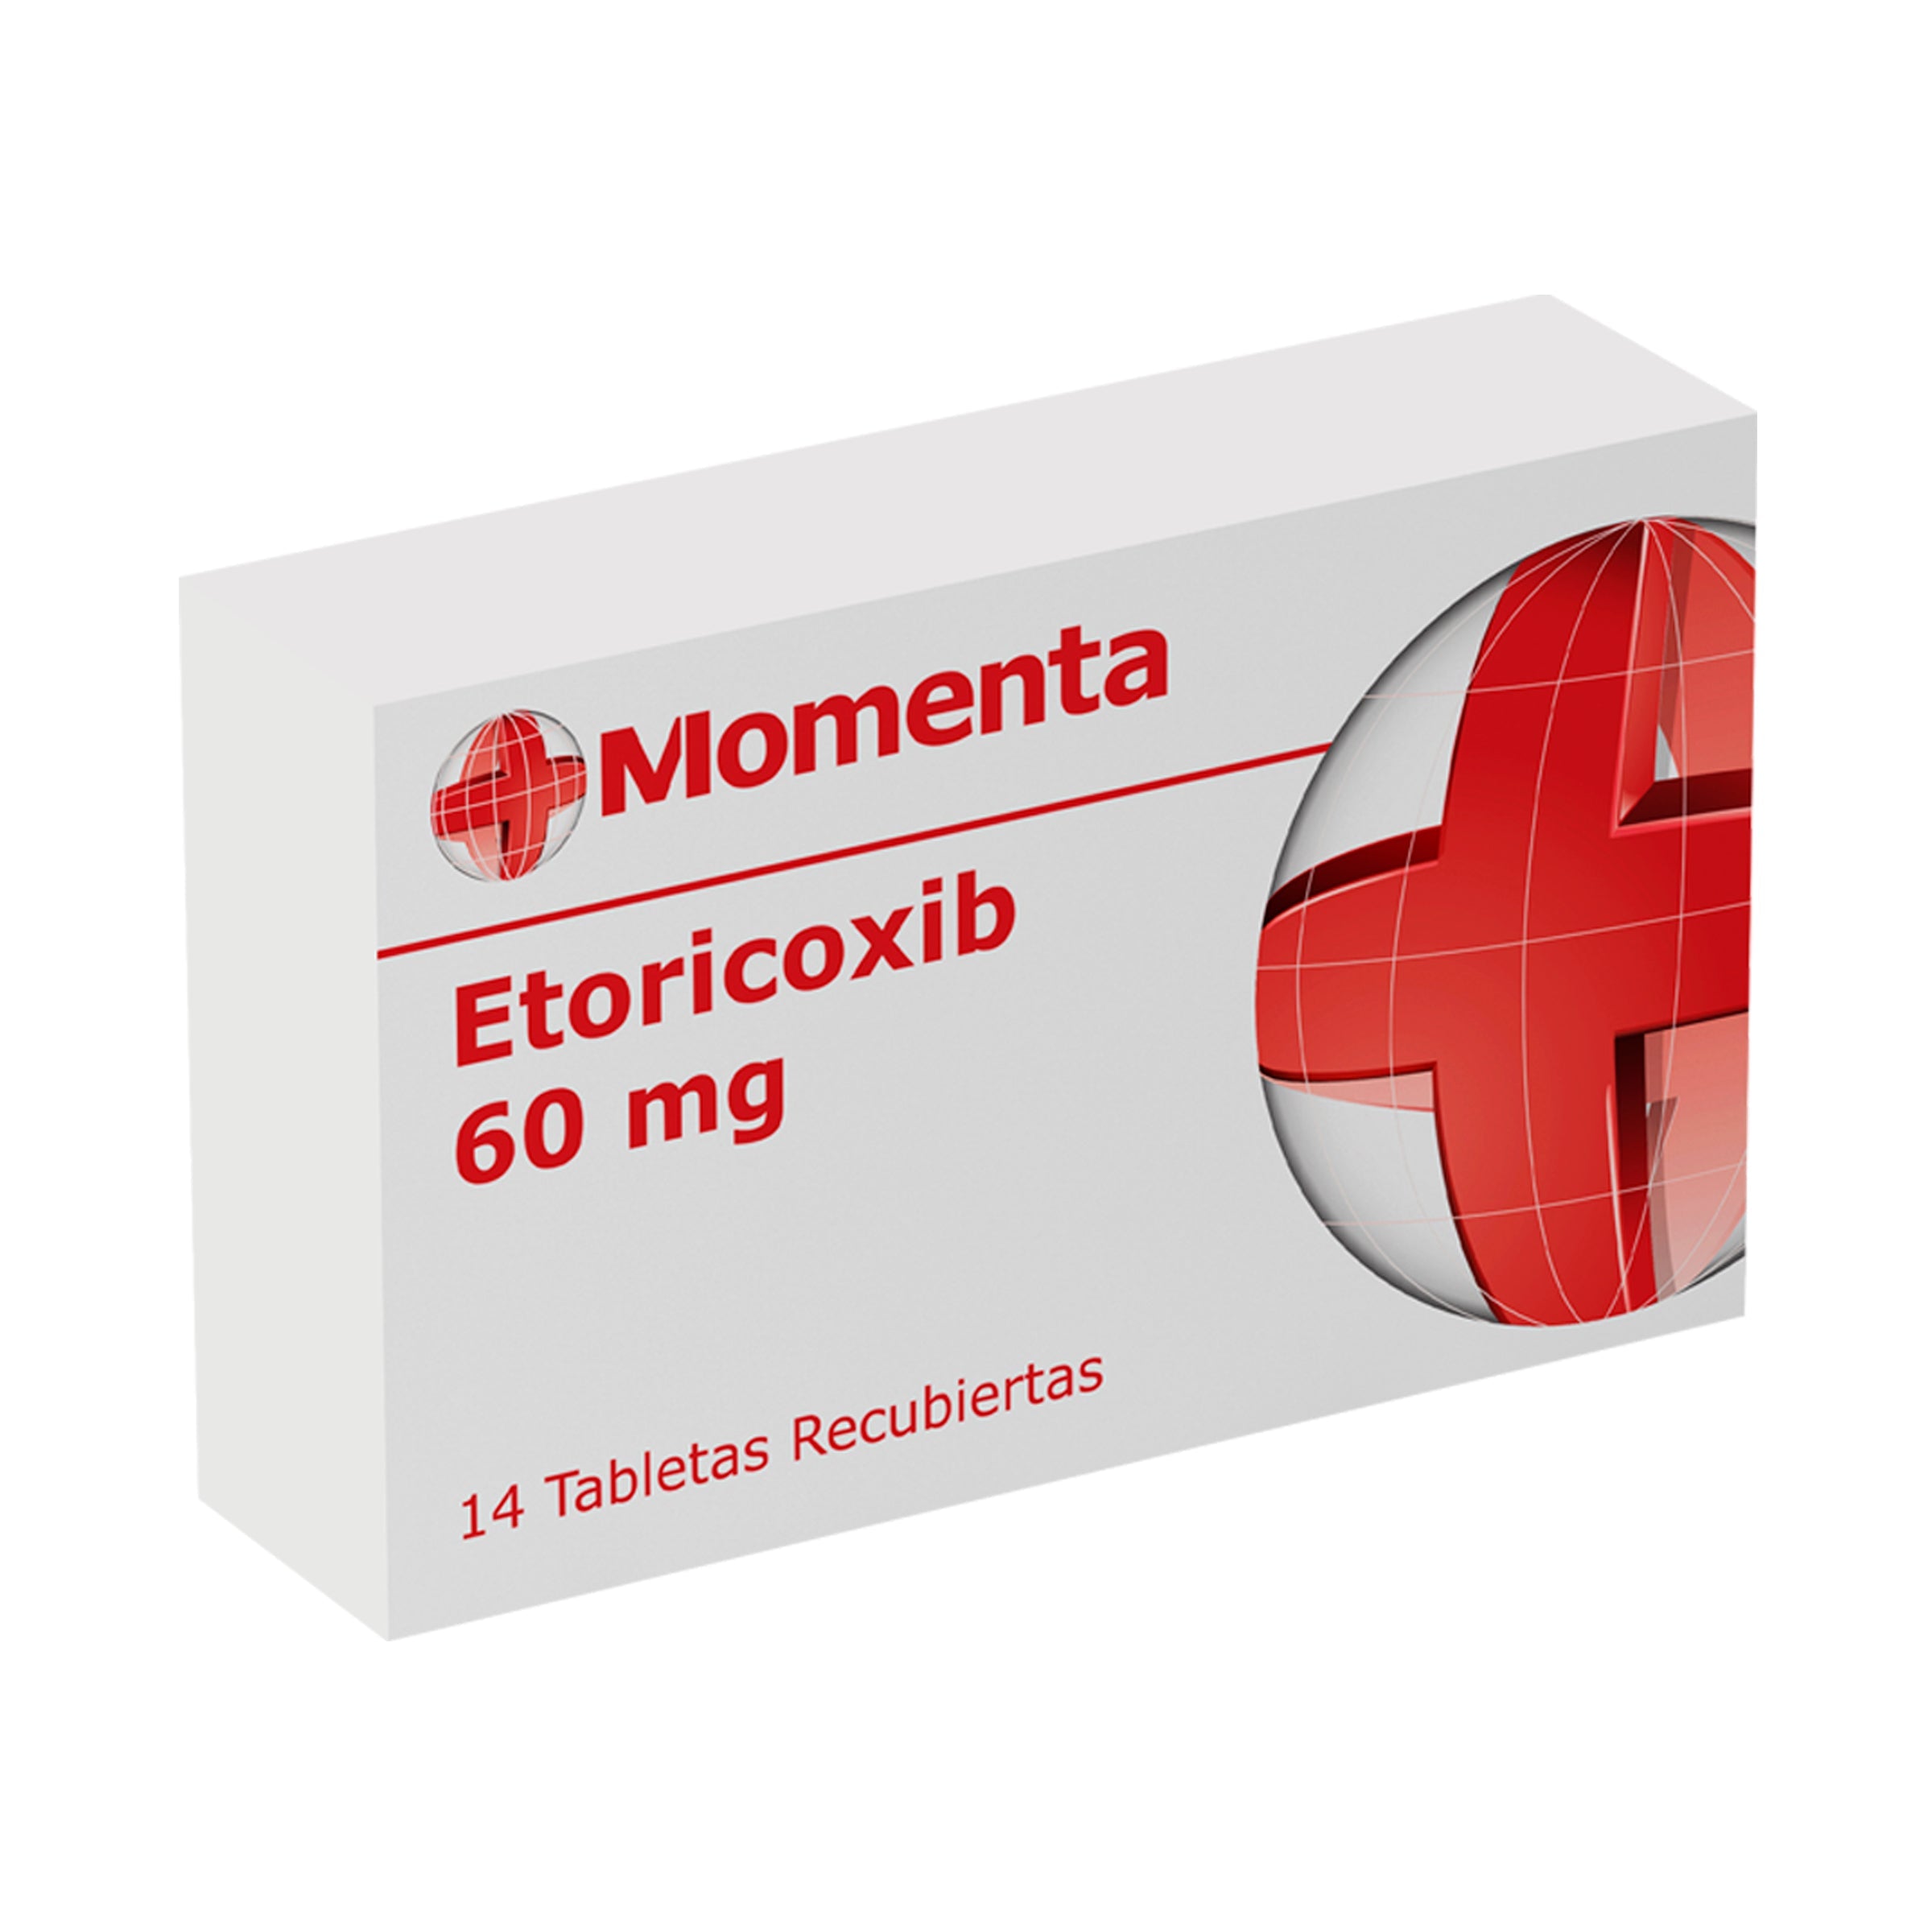 ETORICOXIB 60 MG 14 TABLETAS MO